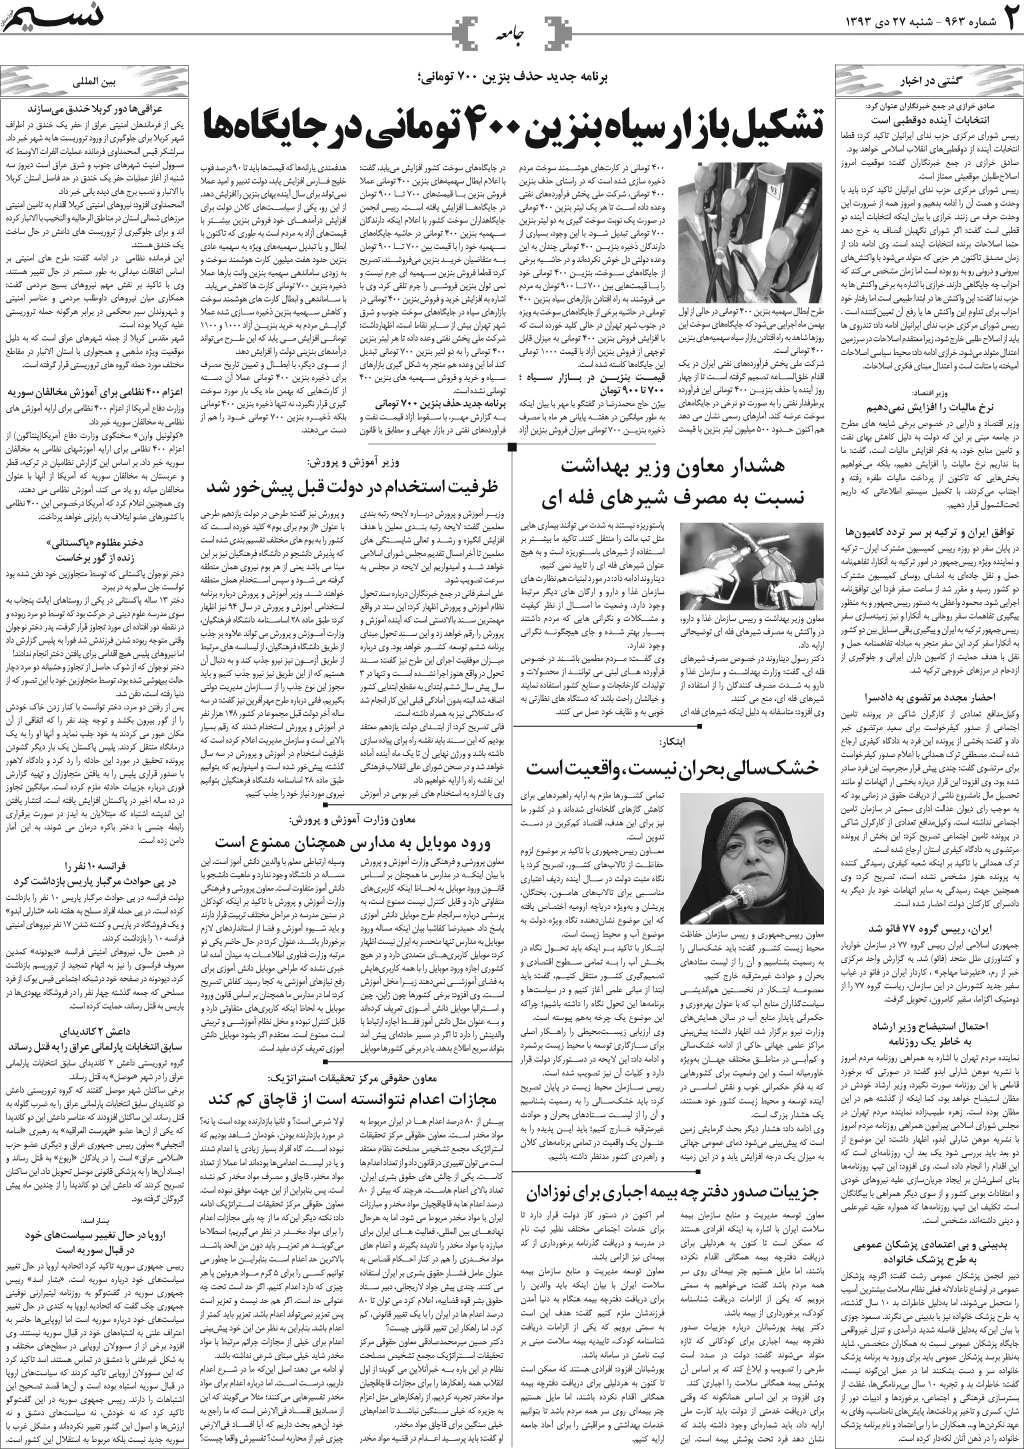 صفحه جامعه روزنامه نسیم شماره 963